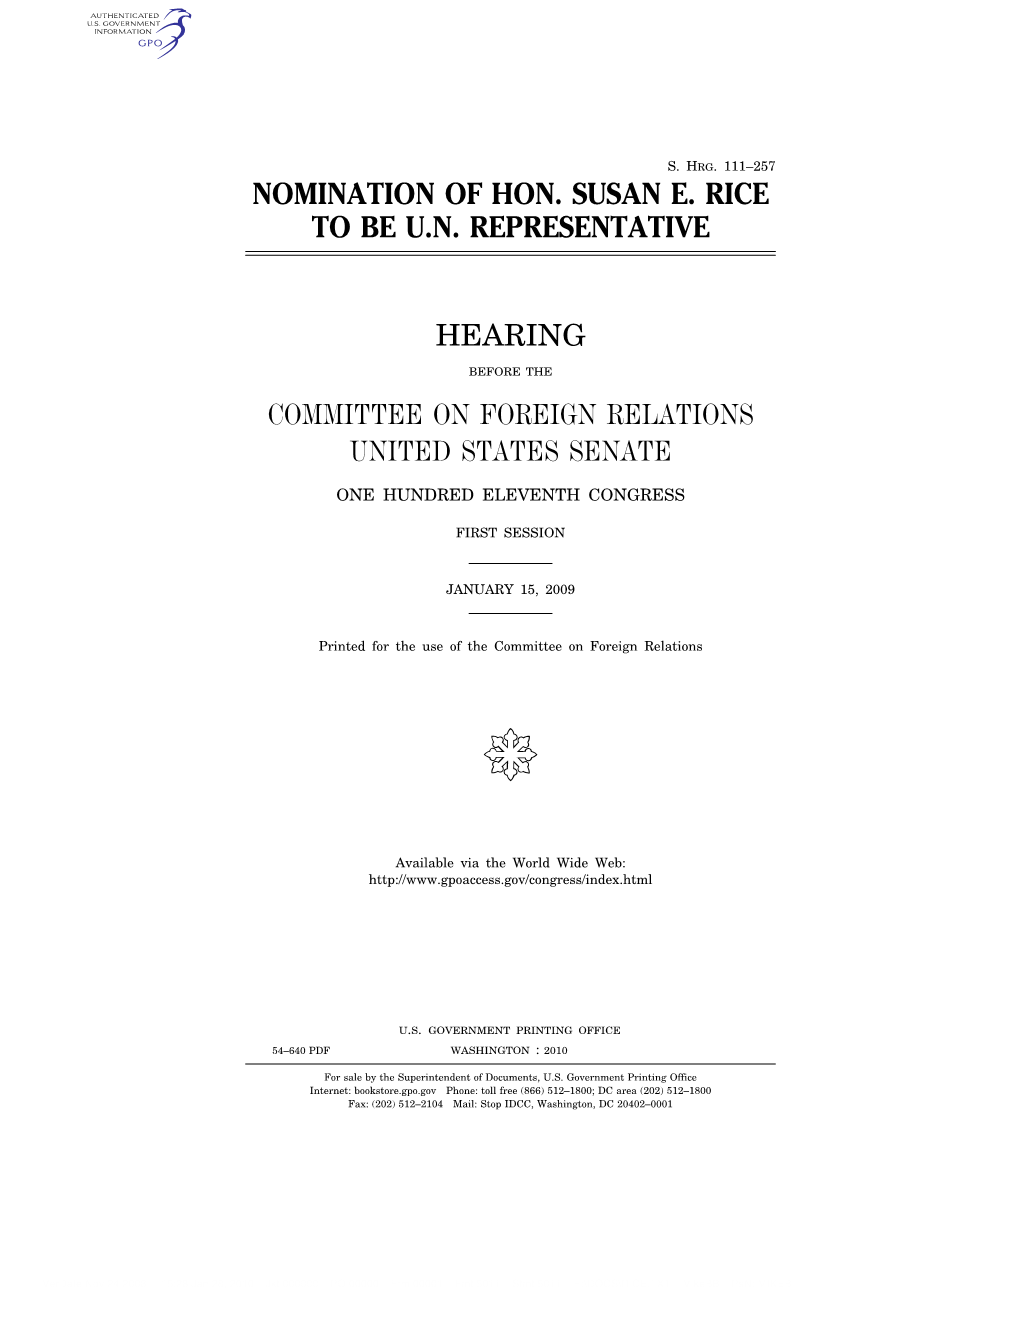 Nomination of Hon. Susan E. Rice to Be Un Representative Hearing